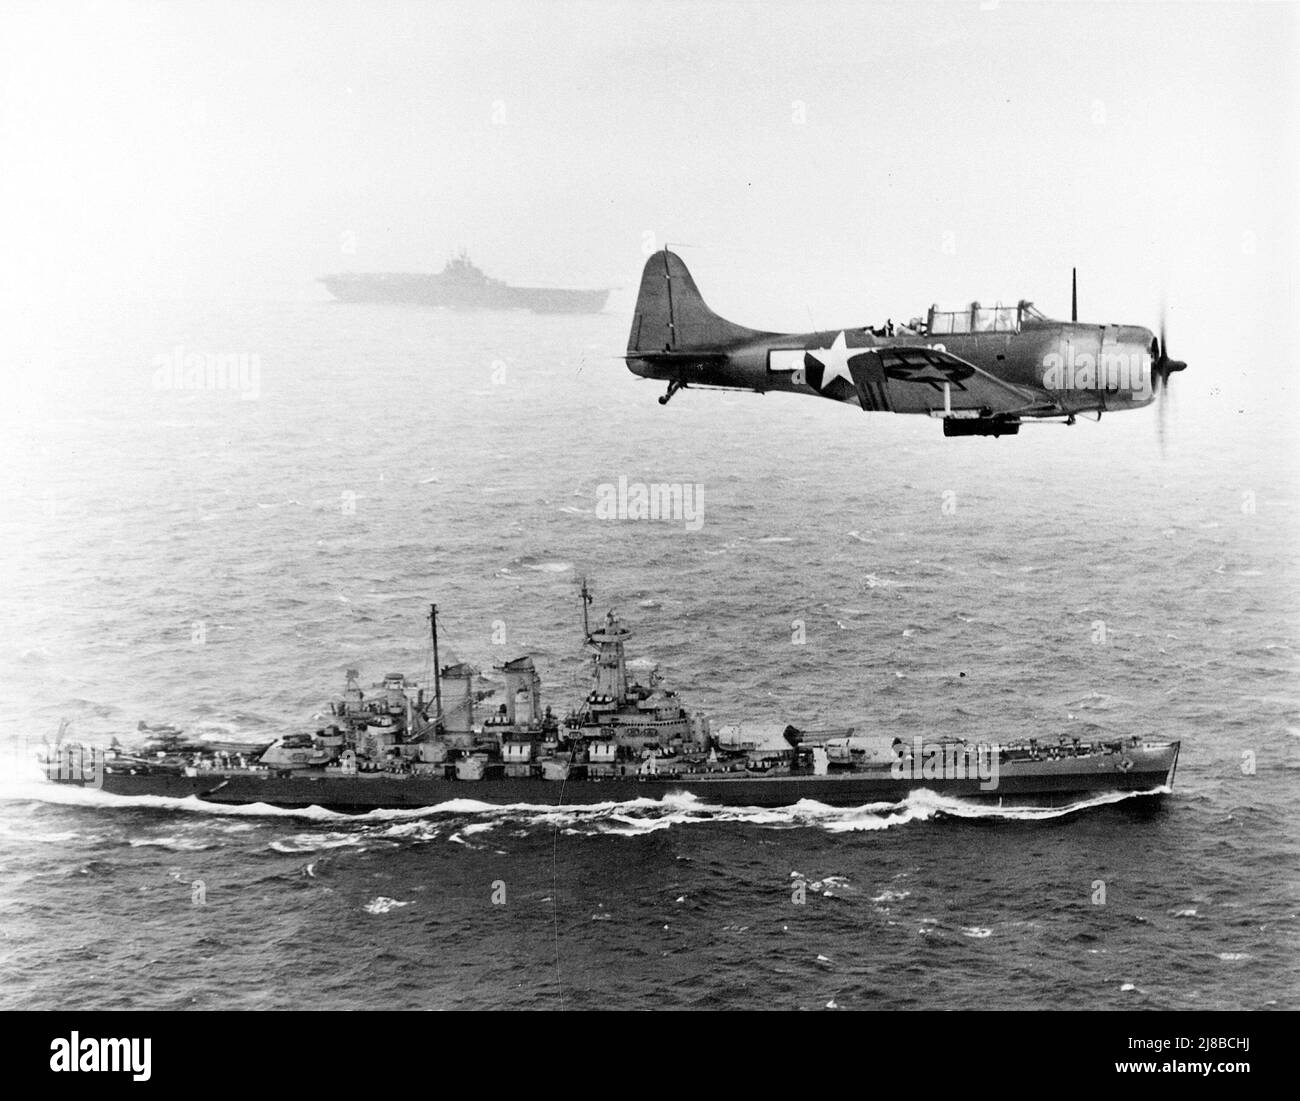 U.S. Navy Douglas SBD-5 Dauntless de l'escadron de bombardement VB-16 vole une patrouille antisous-marine au-dessus du cuirassé USS Washington (BB-56) en route vers l'invasion des îles Gilbert, le 12 novembre 1943. Le navire en arrière-plan est le USS Lexington (CV-16), le porte-avions. Banque D'Images